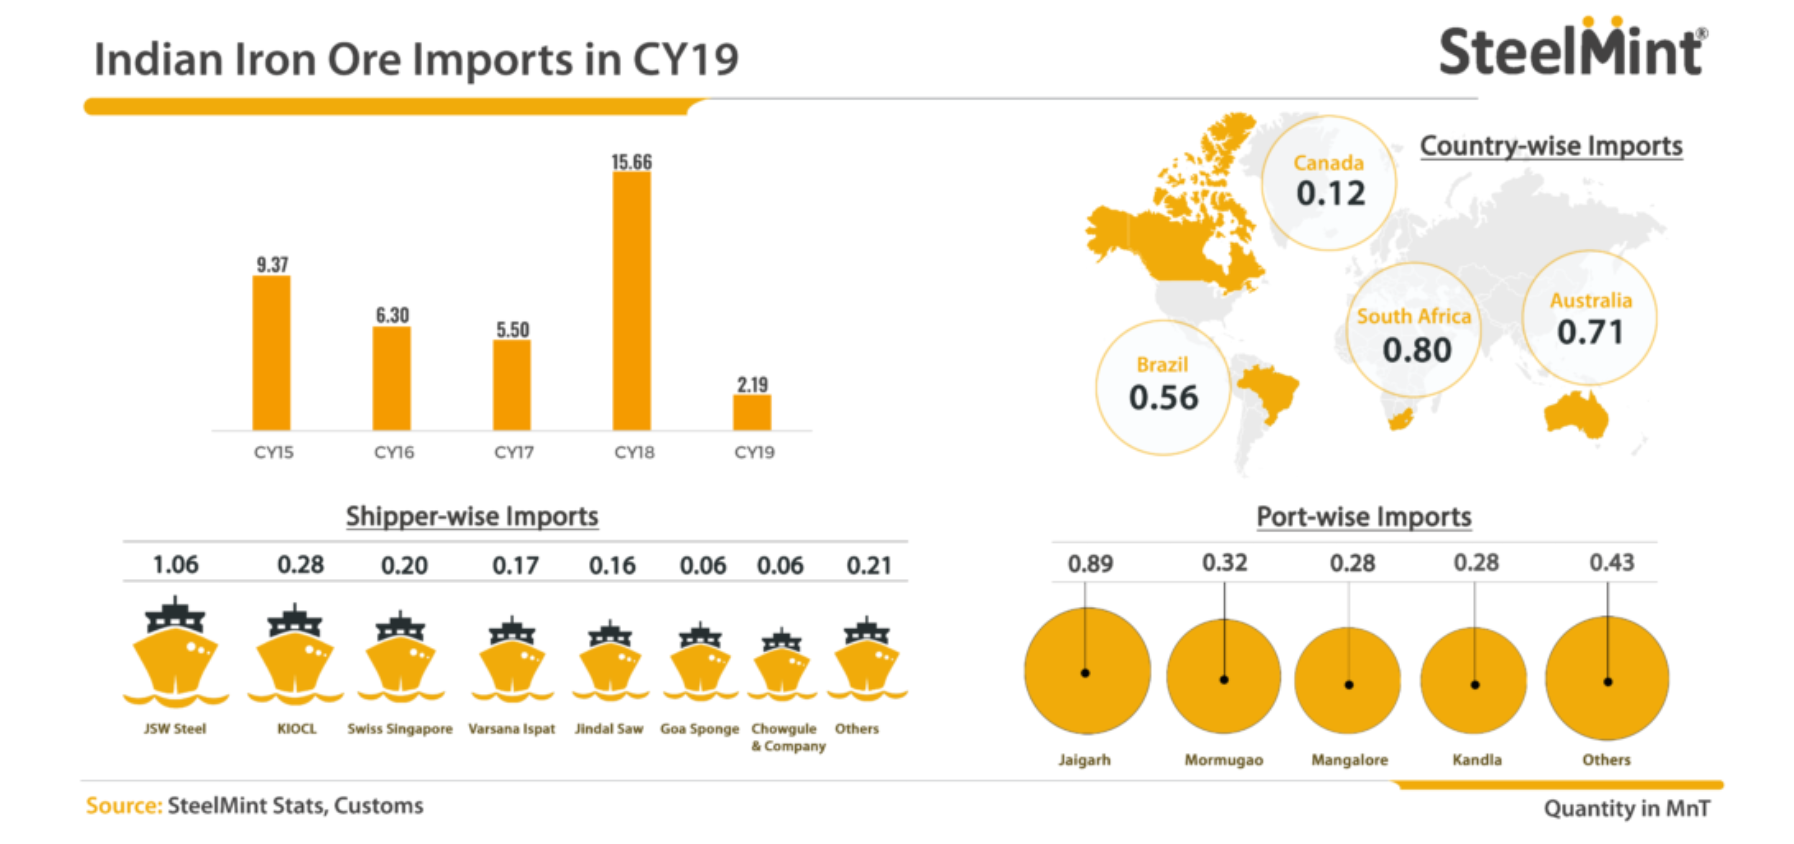 سقوط ۸۶ درصدی واردات سنگ آهن هند در سال ۲۰۱۹/ دلایل کاهش واردات سنگ آهن هند در سال گذشته بررسی شد